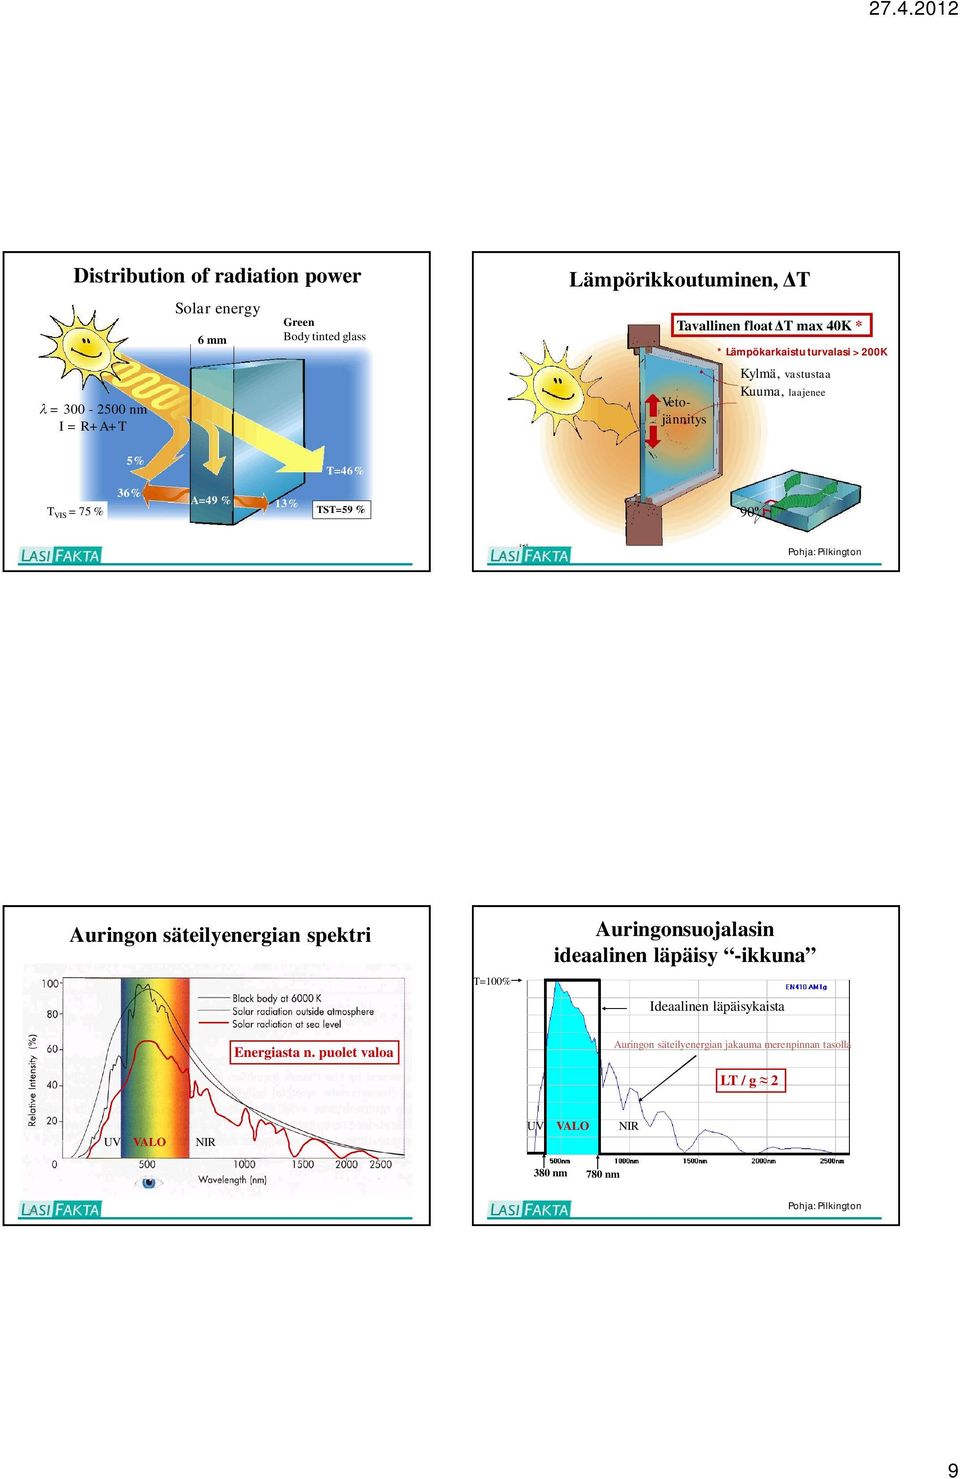 3:65 Pohja: Pilkington Auringon säteilyenergian spektri T=100% Auringonsuojalasin ideaalinen läpäisy -ikkuna Ideaalinen läpäisykaista